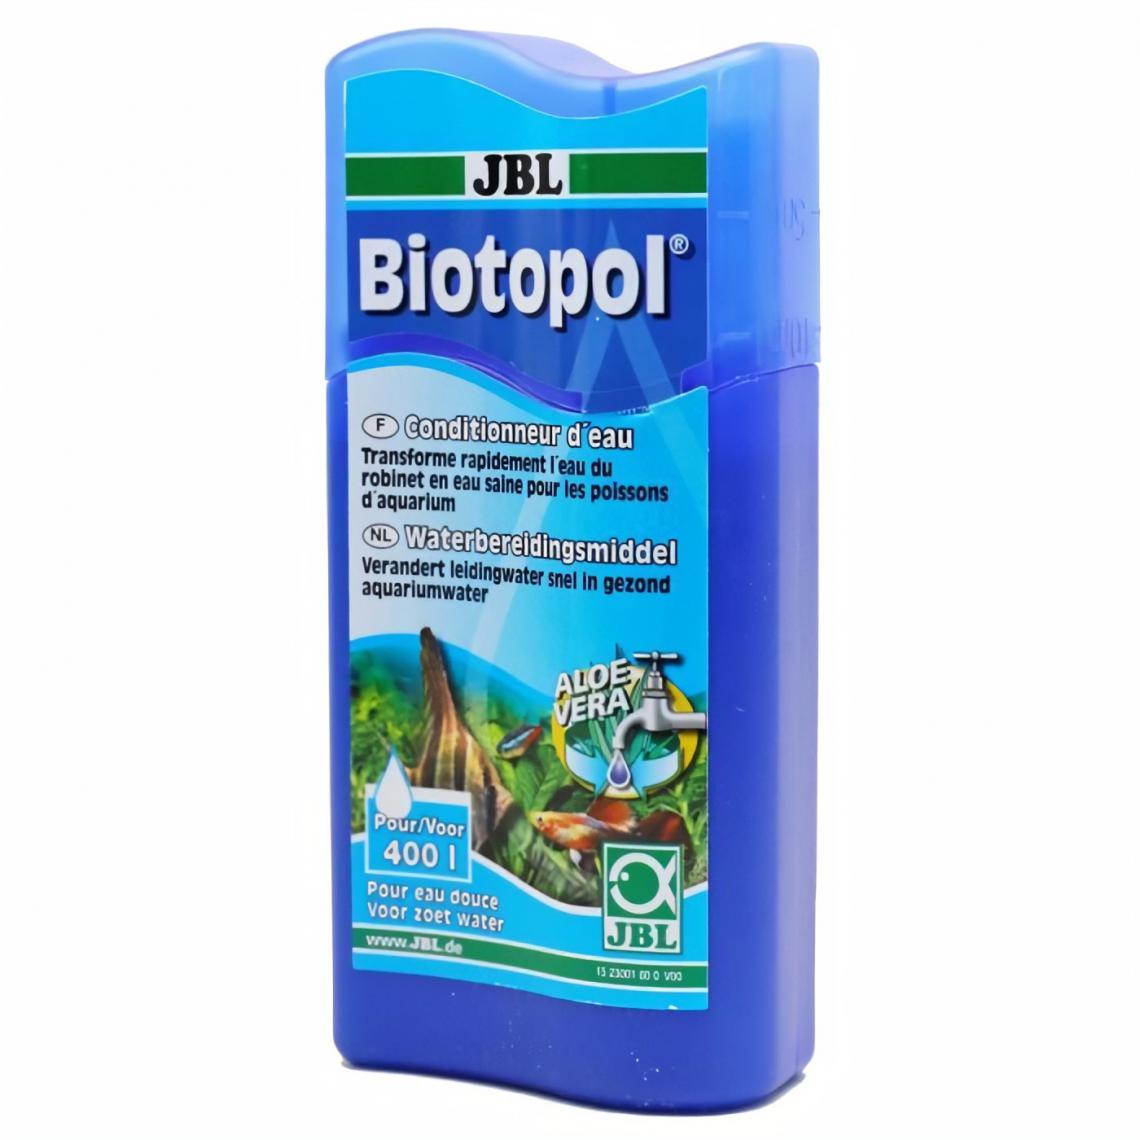 JBL - JBL Conditionneur d'eau Biotopol - Pour aquarium - 100ml - Traitement de l'eau pour aquarium